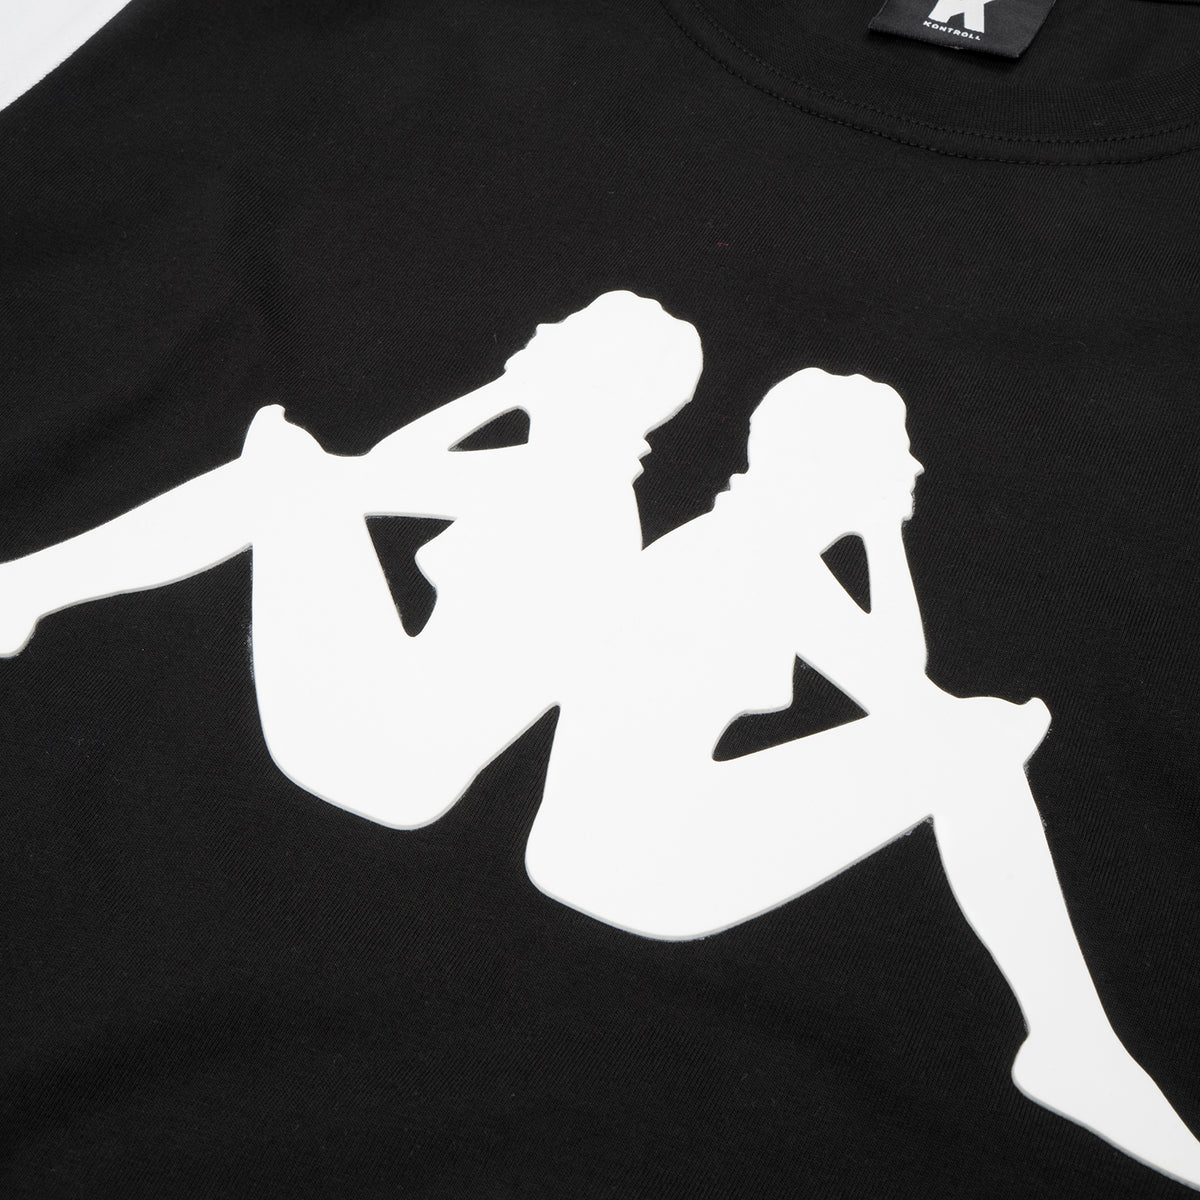 Kappa Kontroll Woman T-Shirt Black / White - Concrete